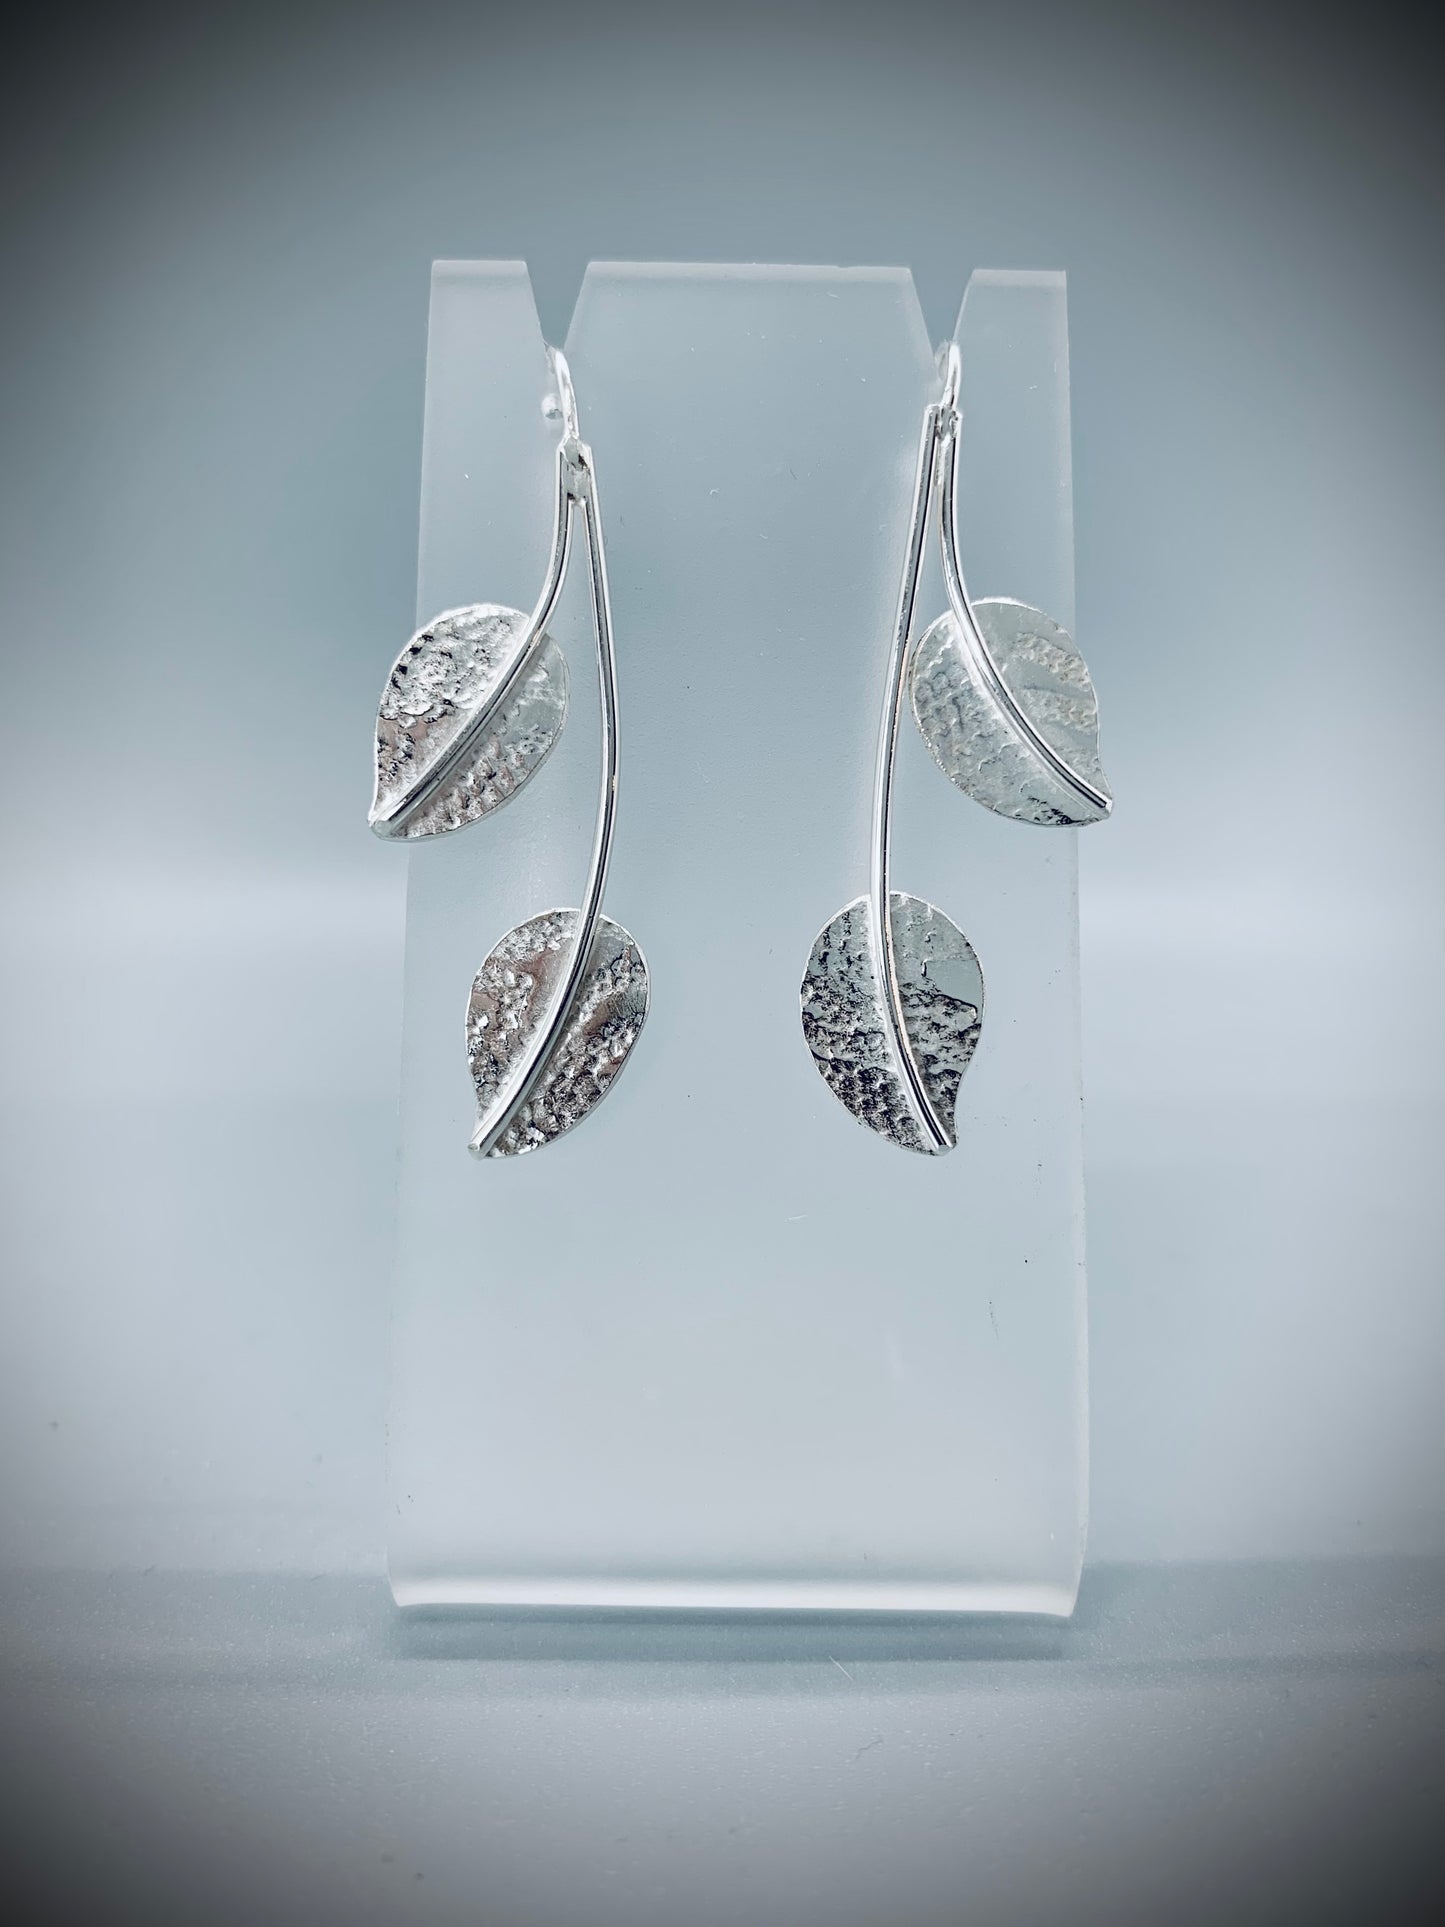 Double leaf earrings